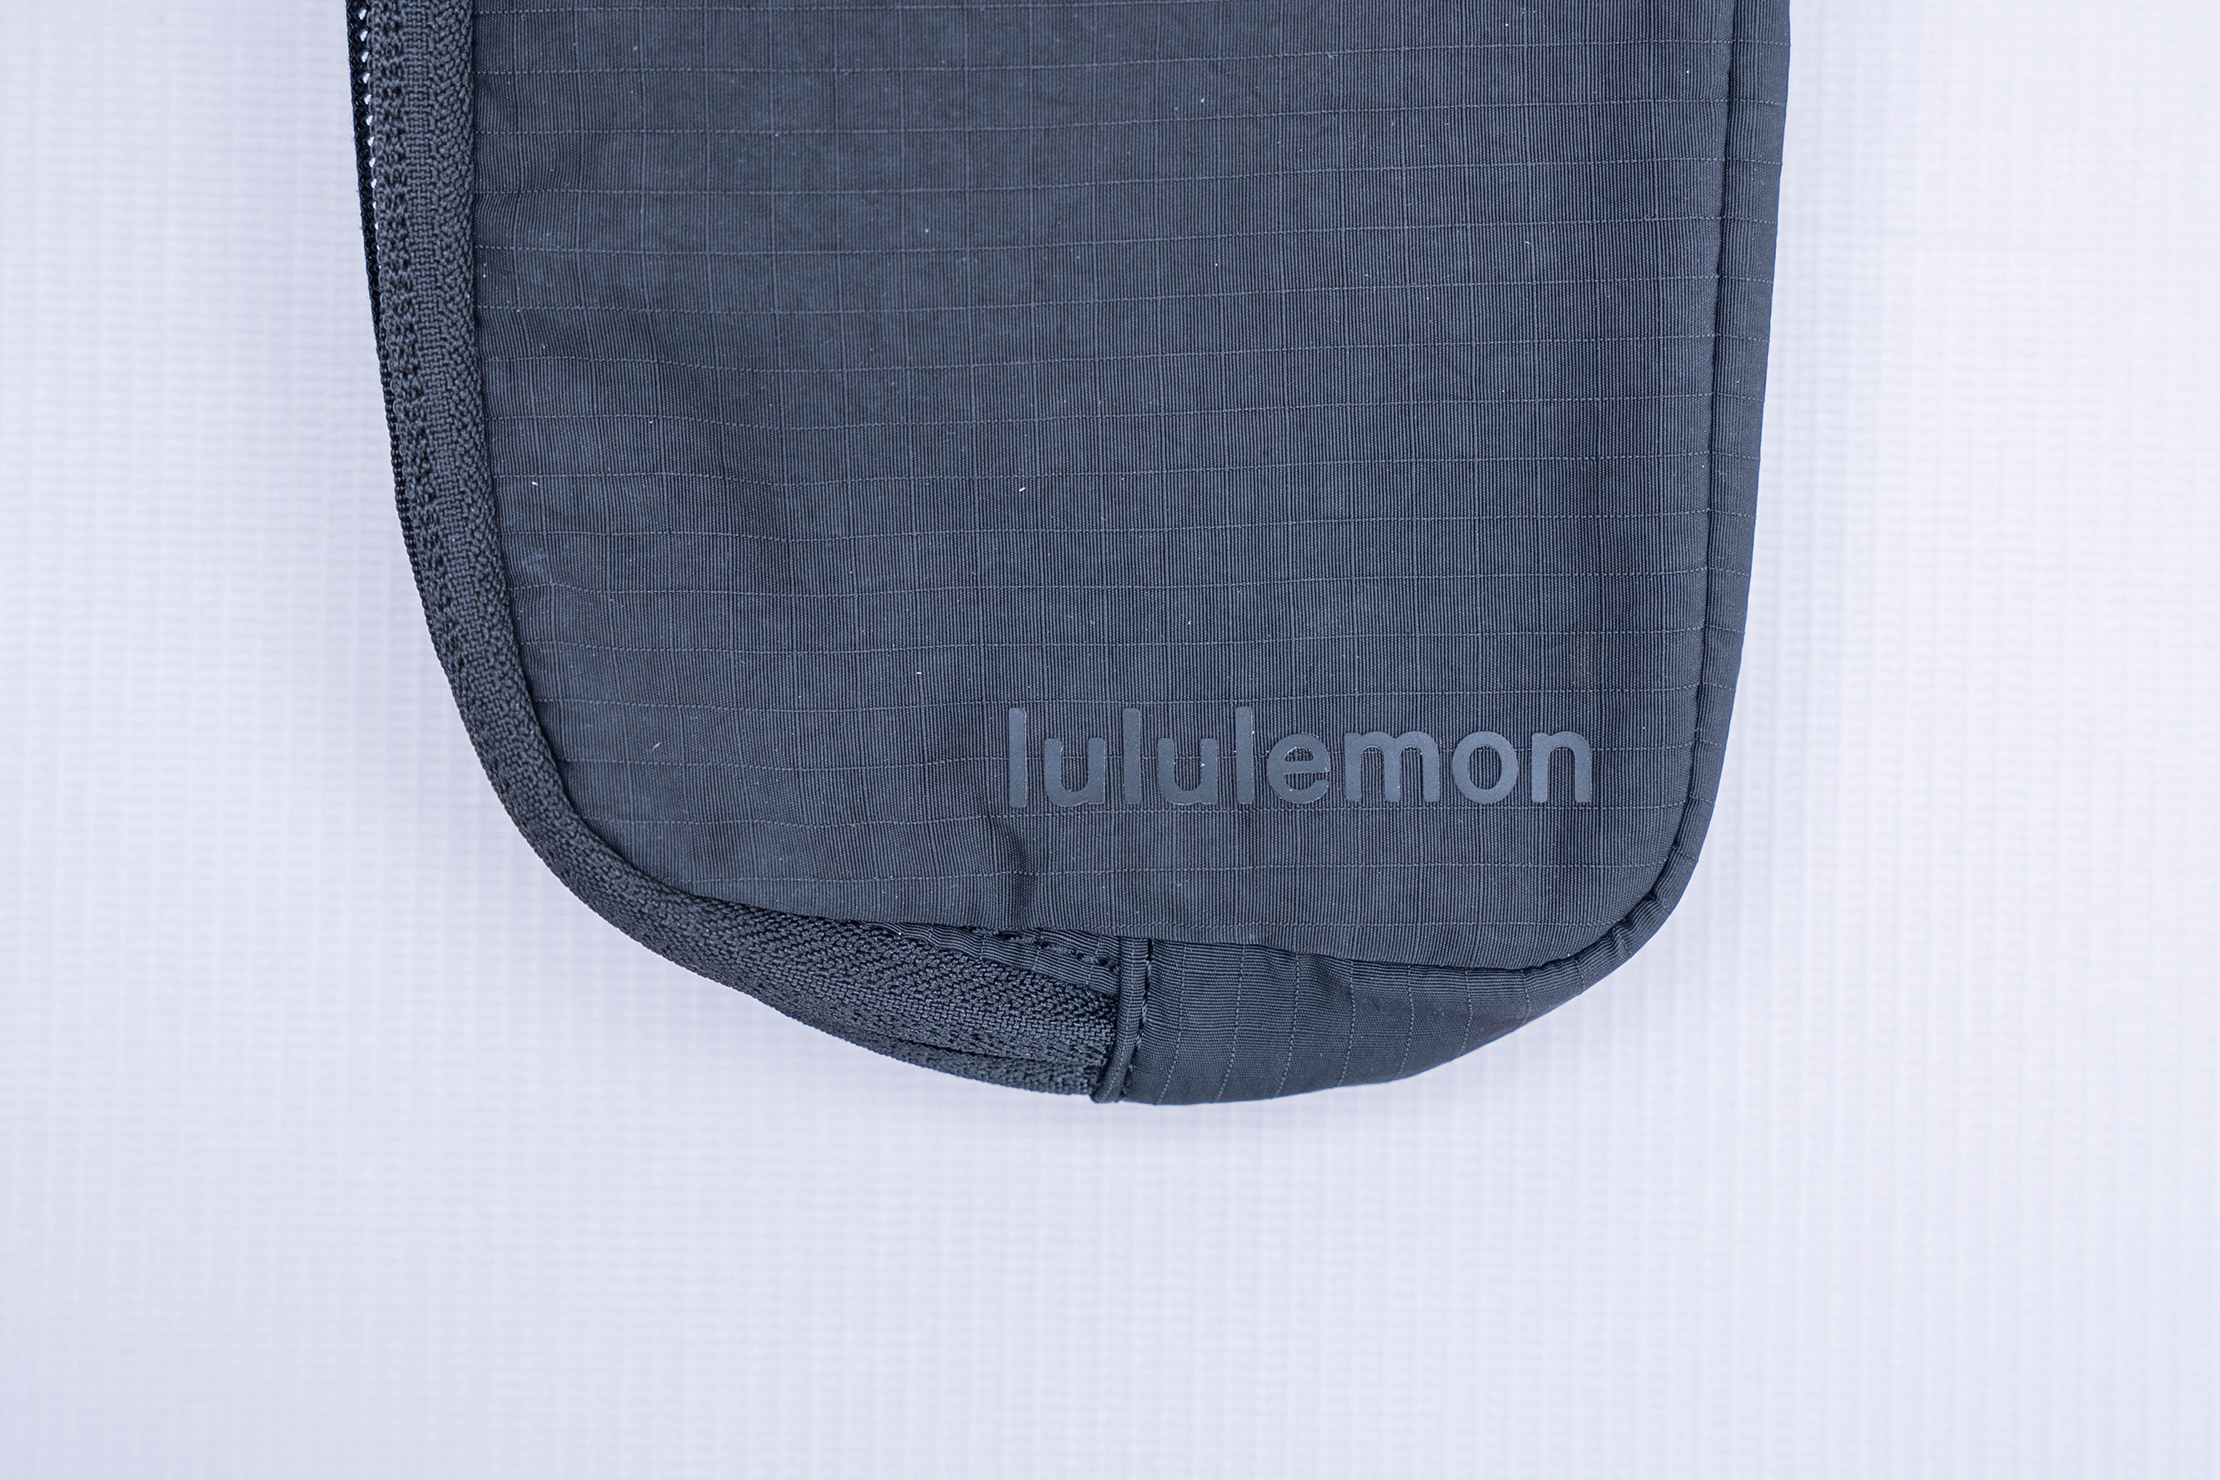 Céline Mini Belt Bag - What fits inside? - Halfie's Style